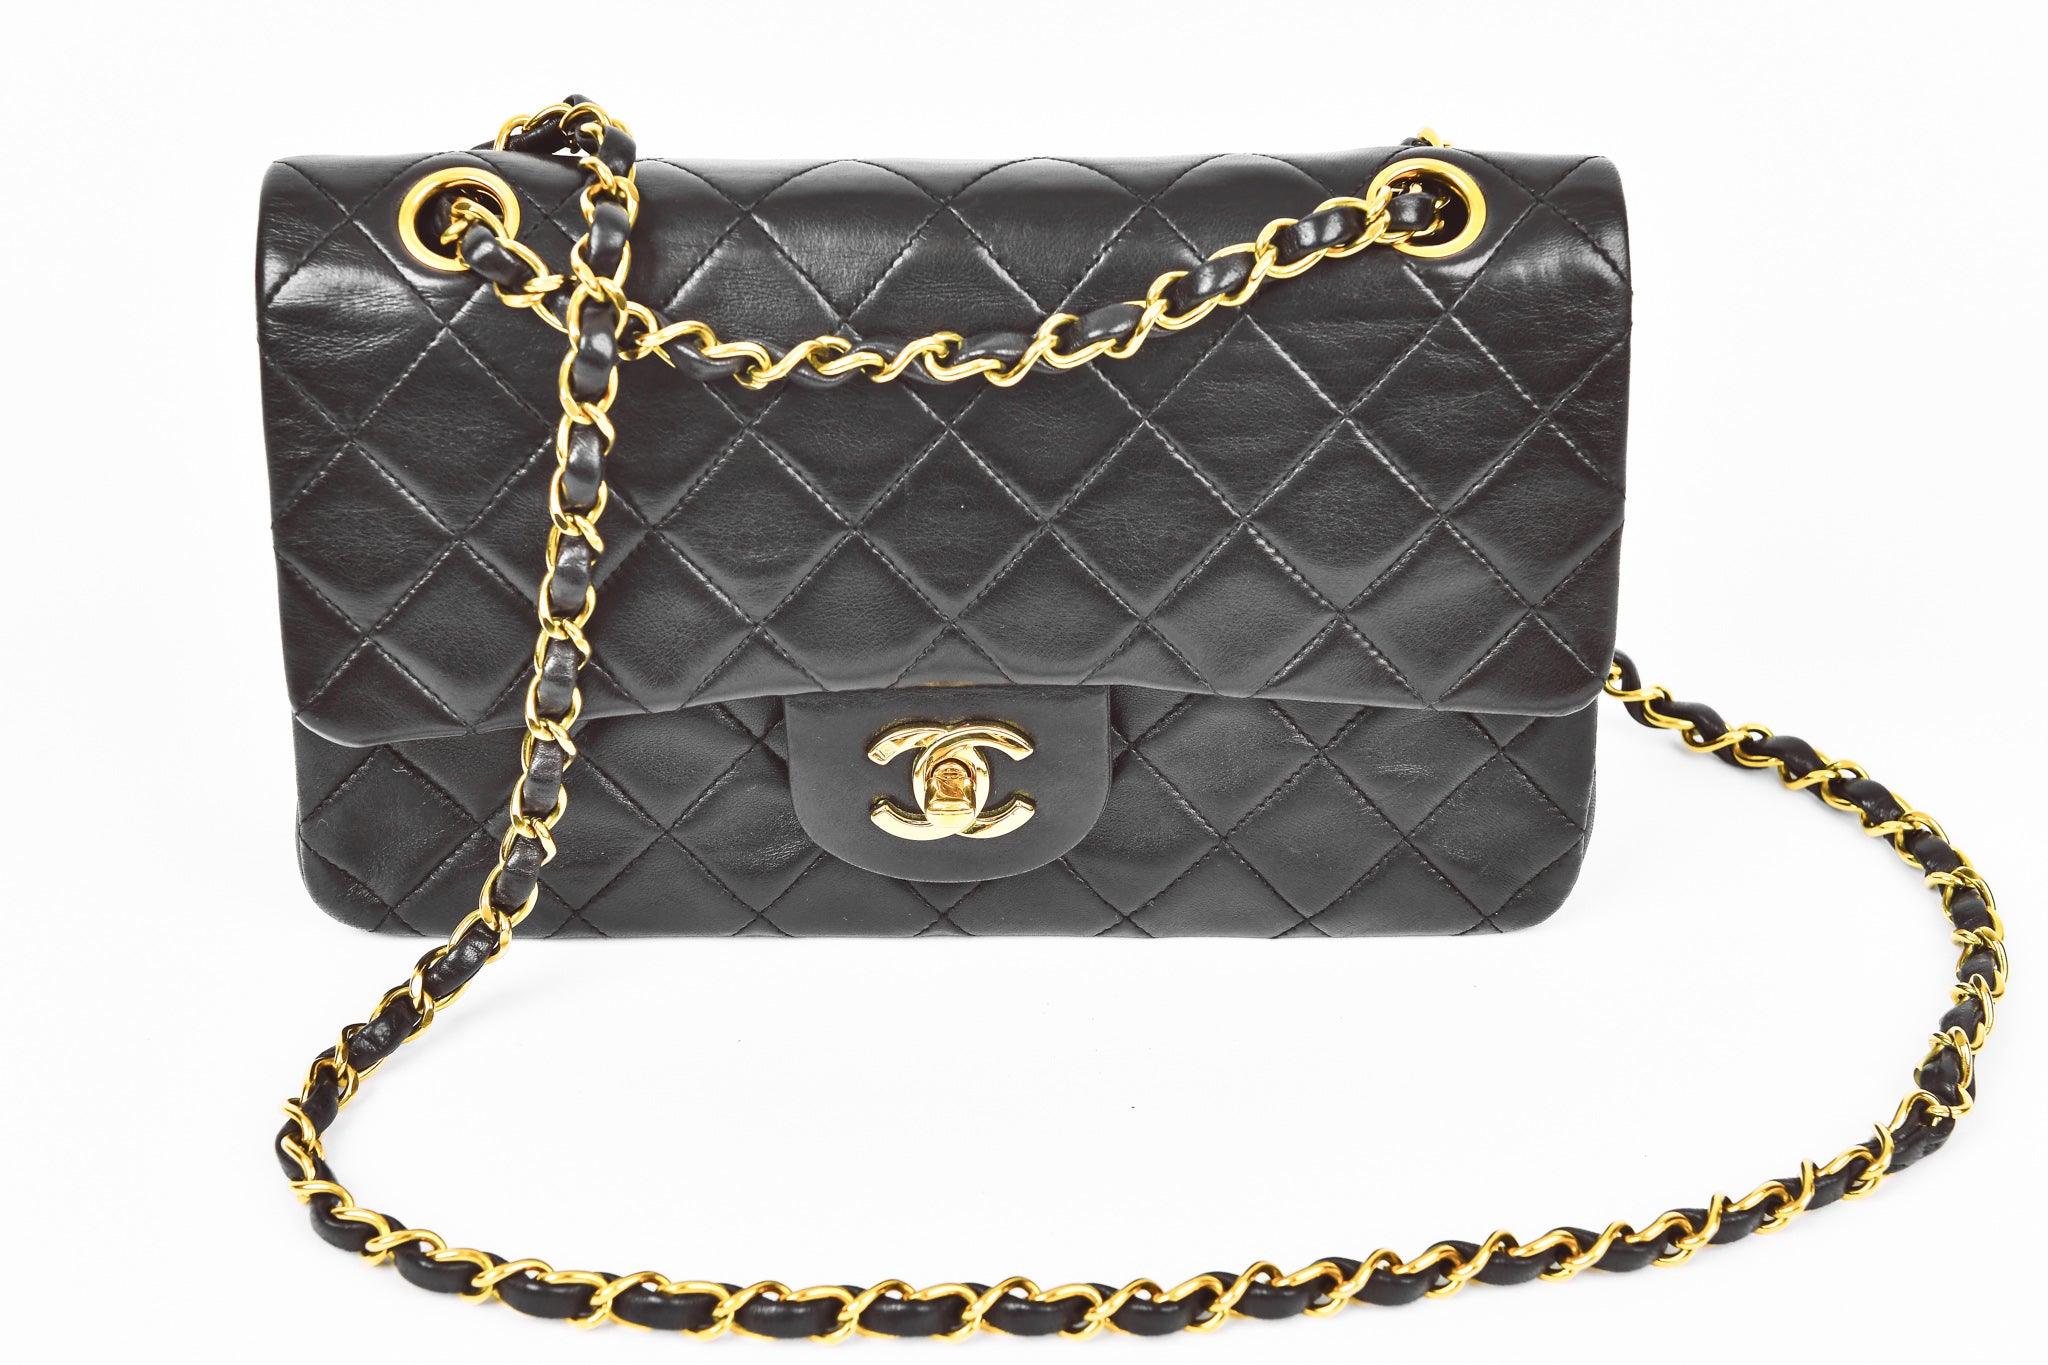 Chanel Vintage 1980s Matelasse Quilted Navy Blue Leather Shoulder Tote Purse  Bag  eBay